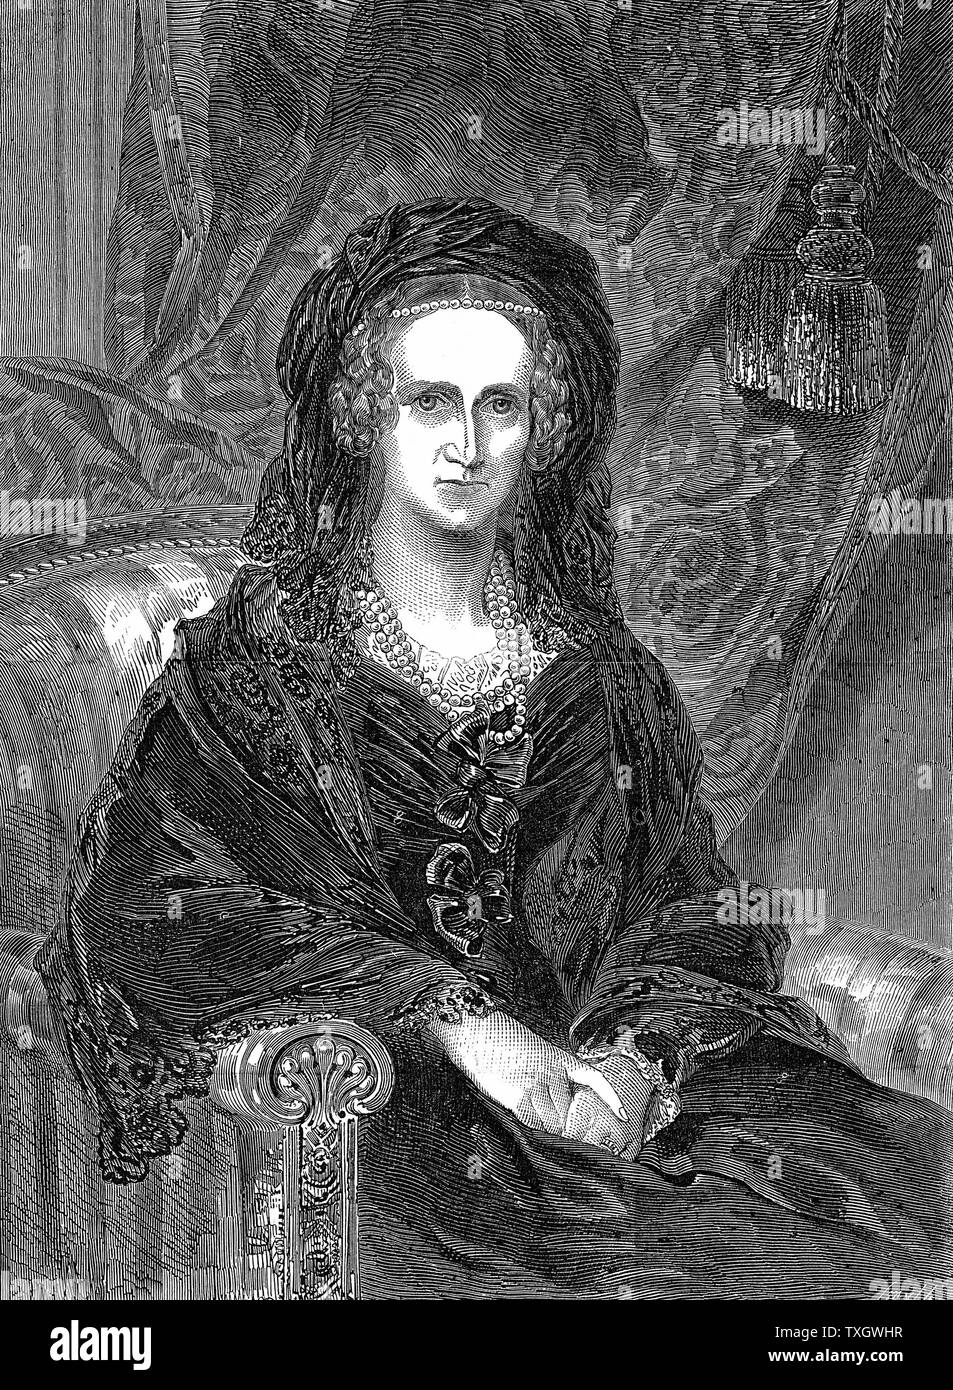 Marie de Saxe-cobourg Meiningen (1792-1849) Reine d'origine allemande-épouse de Guillaume IV de Grande-Bretagne (1830-37). Gravure Portrait Gravure 1849 Londres publié d'Adelaide comme une veuve Banque D'Images